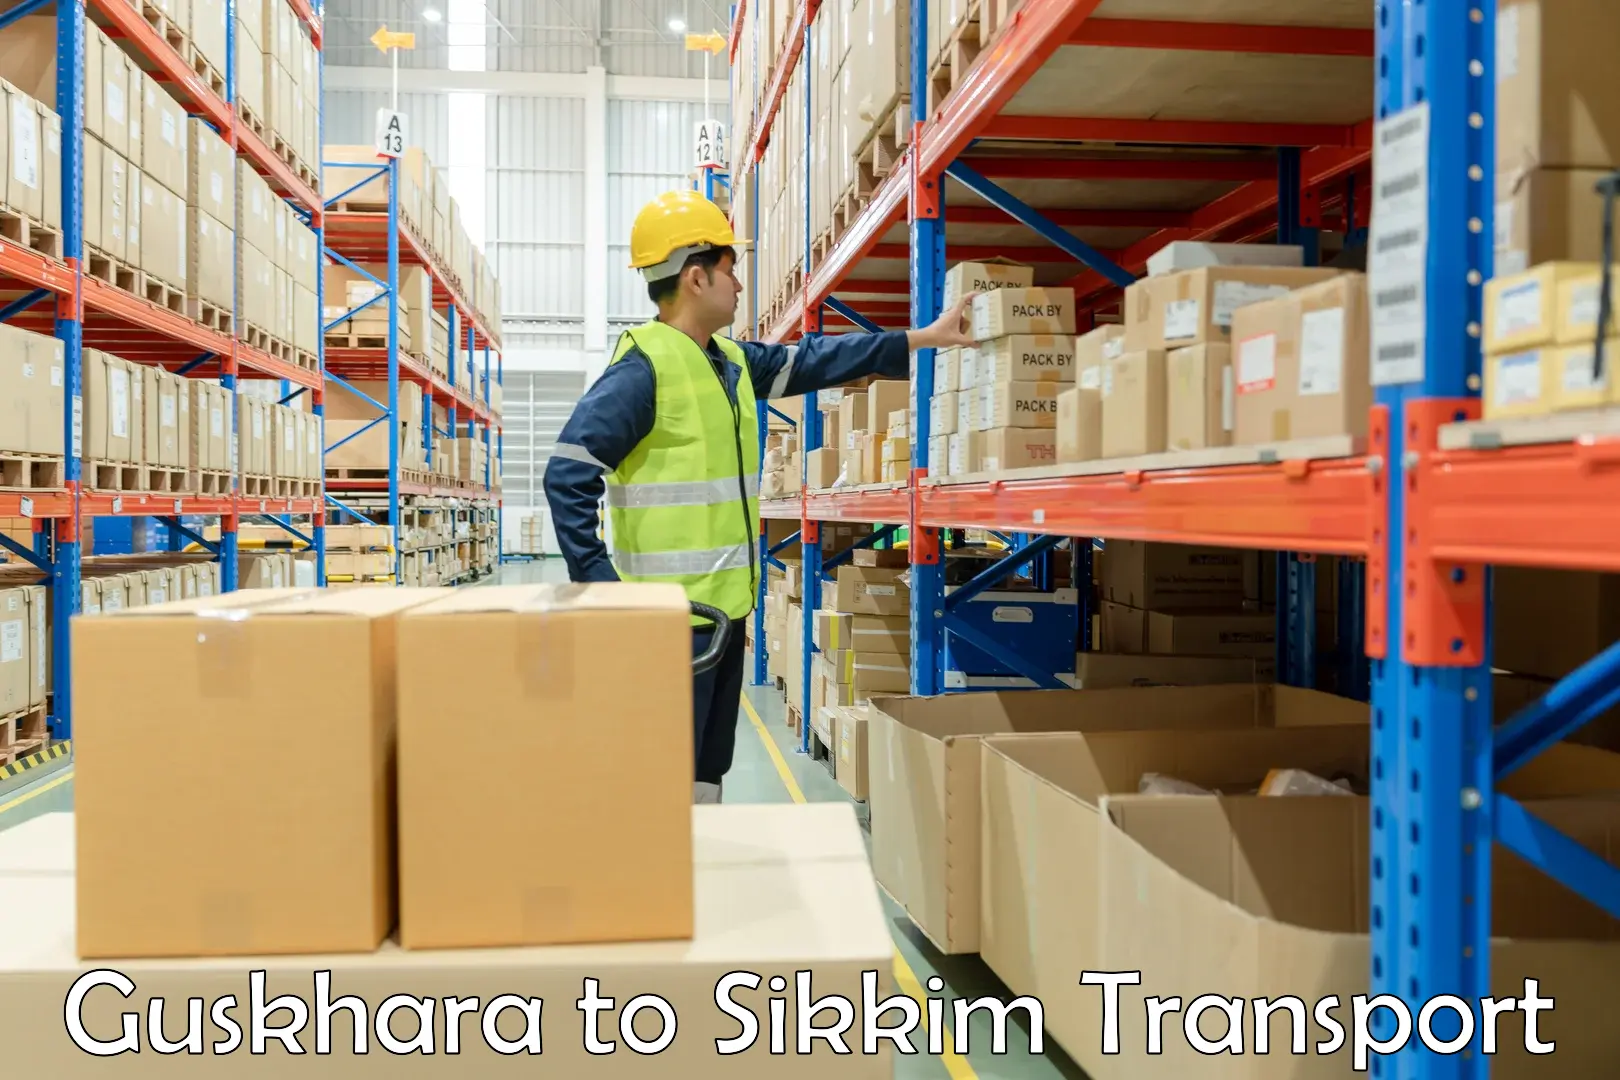 Transport shared services Guskhara to Mangan